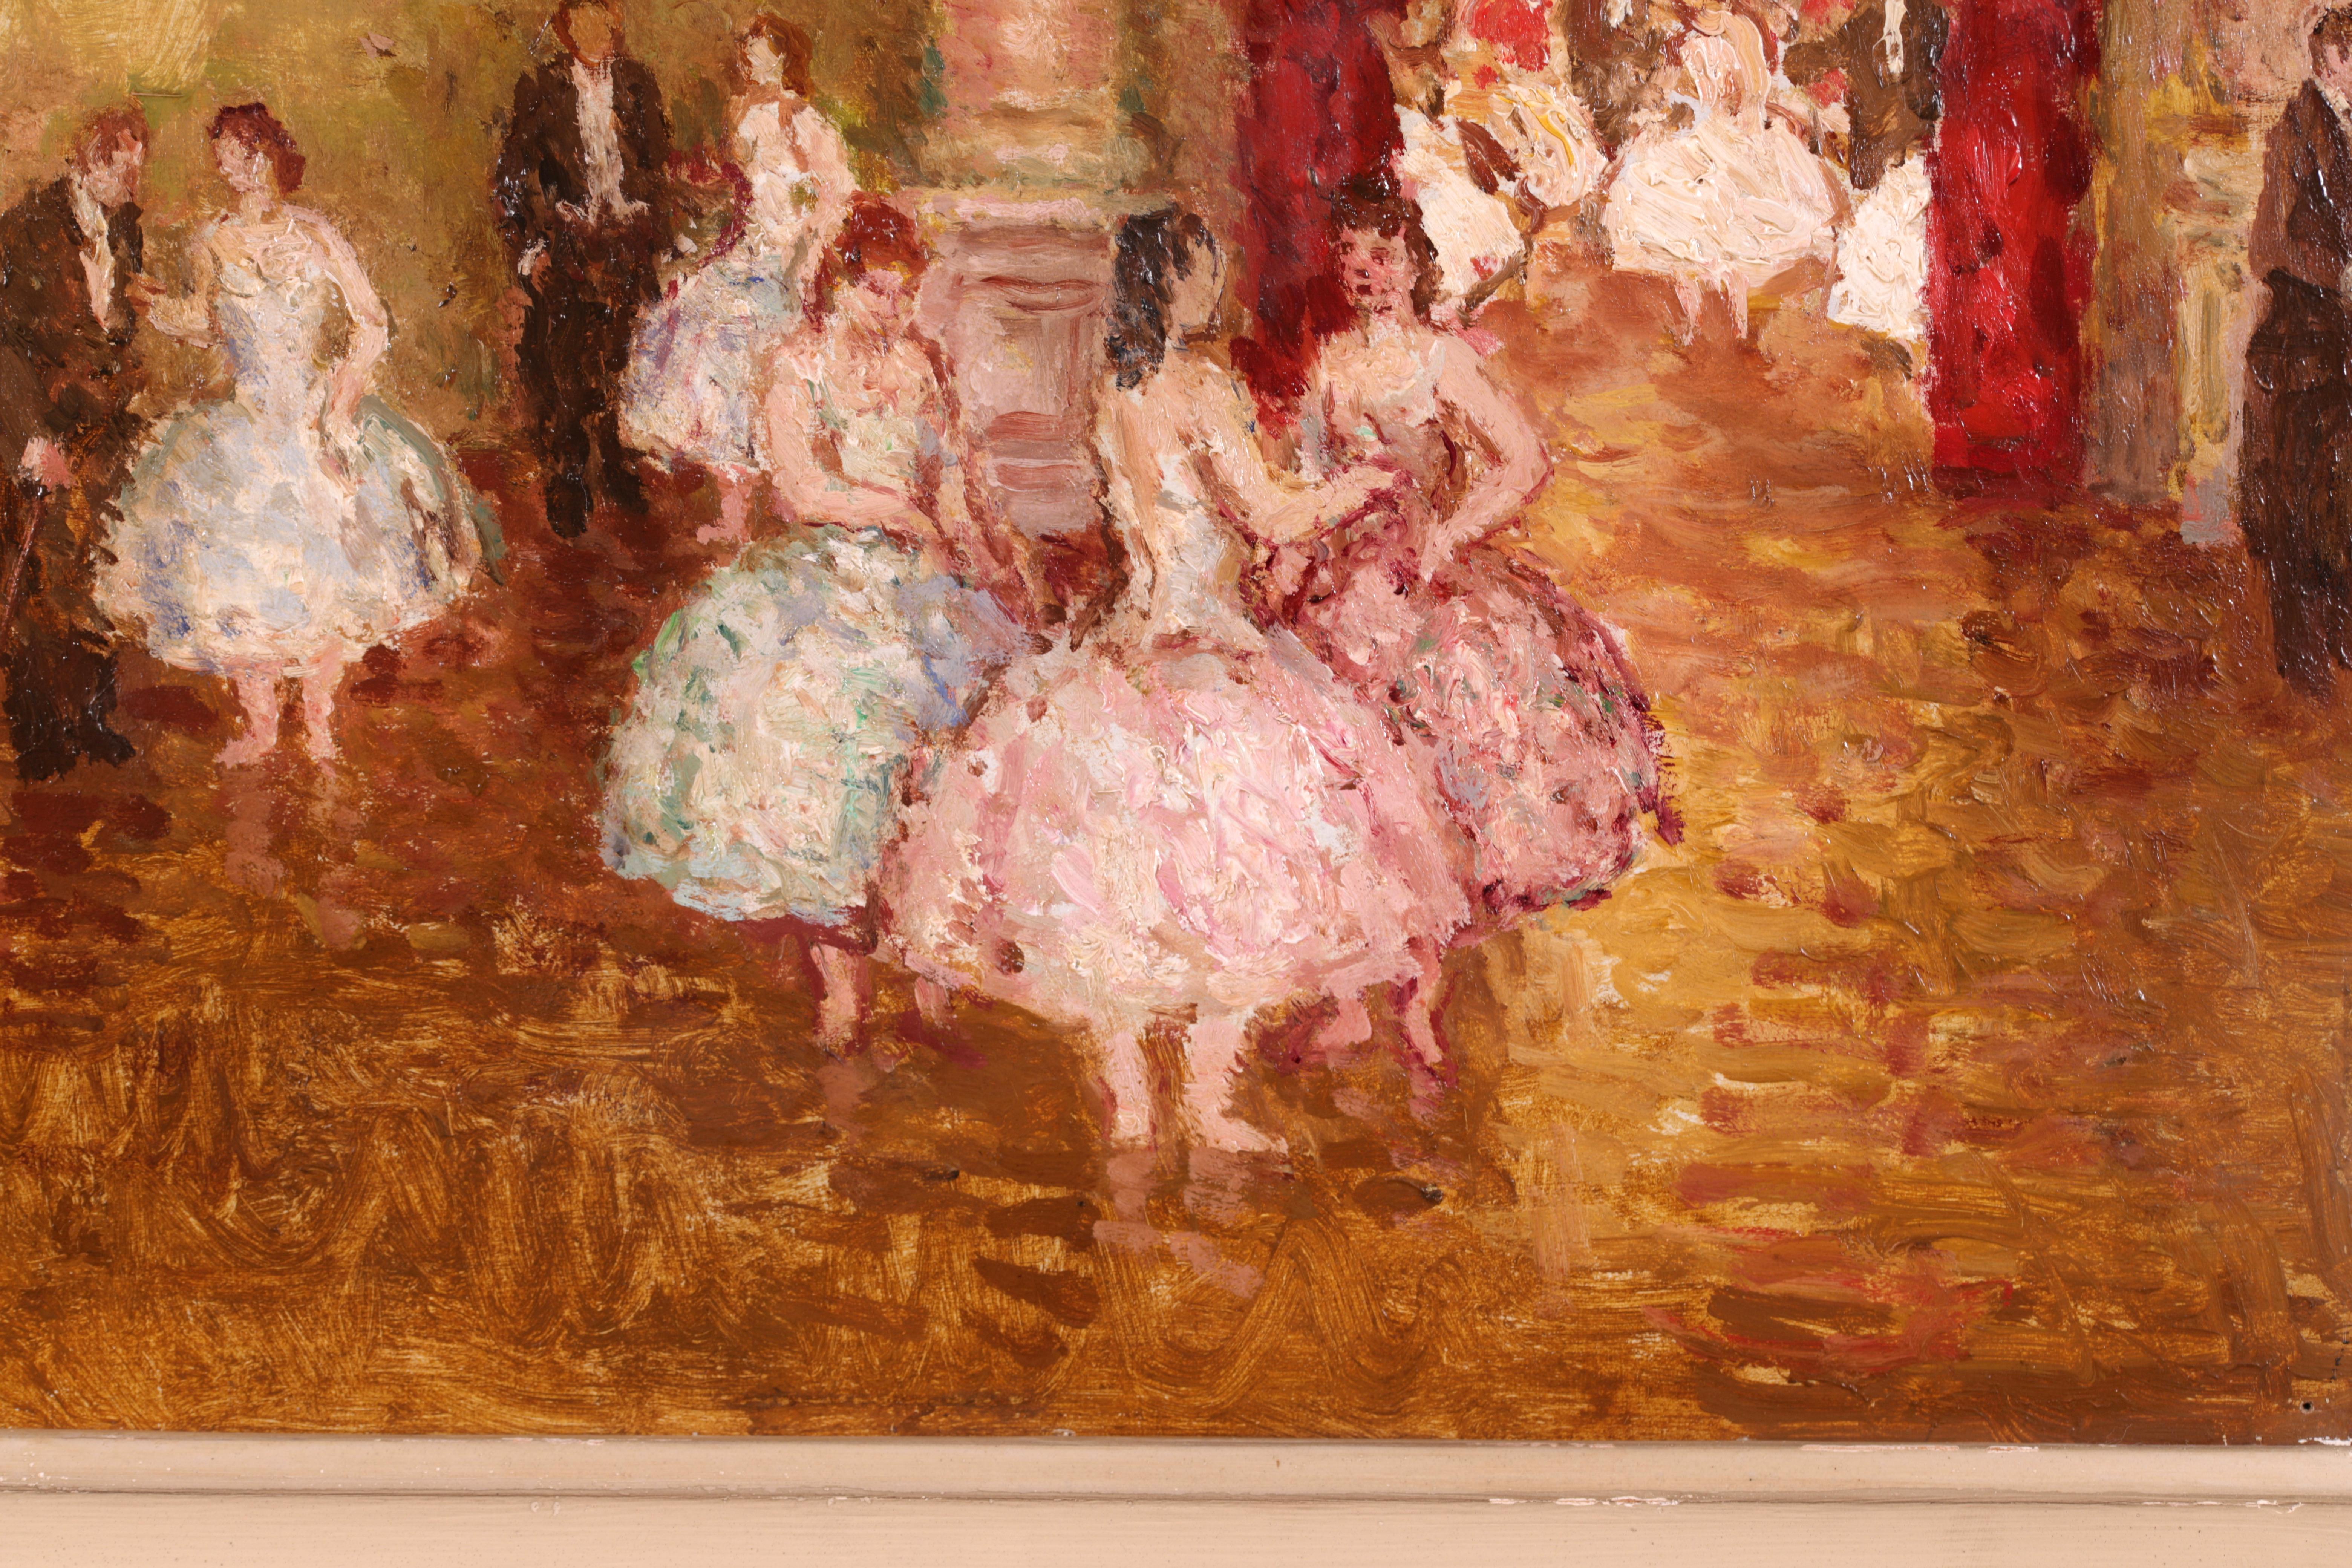 Huile figurative post impressionniste sur panneau vers 1930 signée par le peintre français Marcel Cosson. L'œuvre représente un bal qui se déroule dans un grand hall d'entrée avec de belles femmes vêtues de robes de bal roses, bleues et vertes et